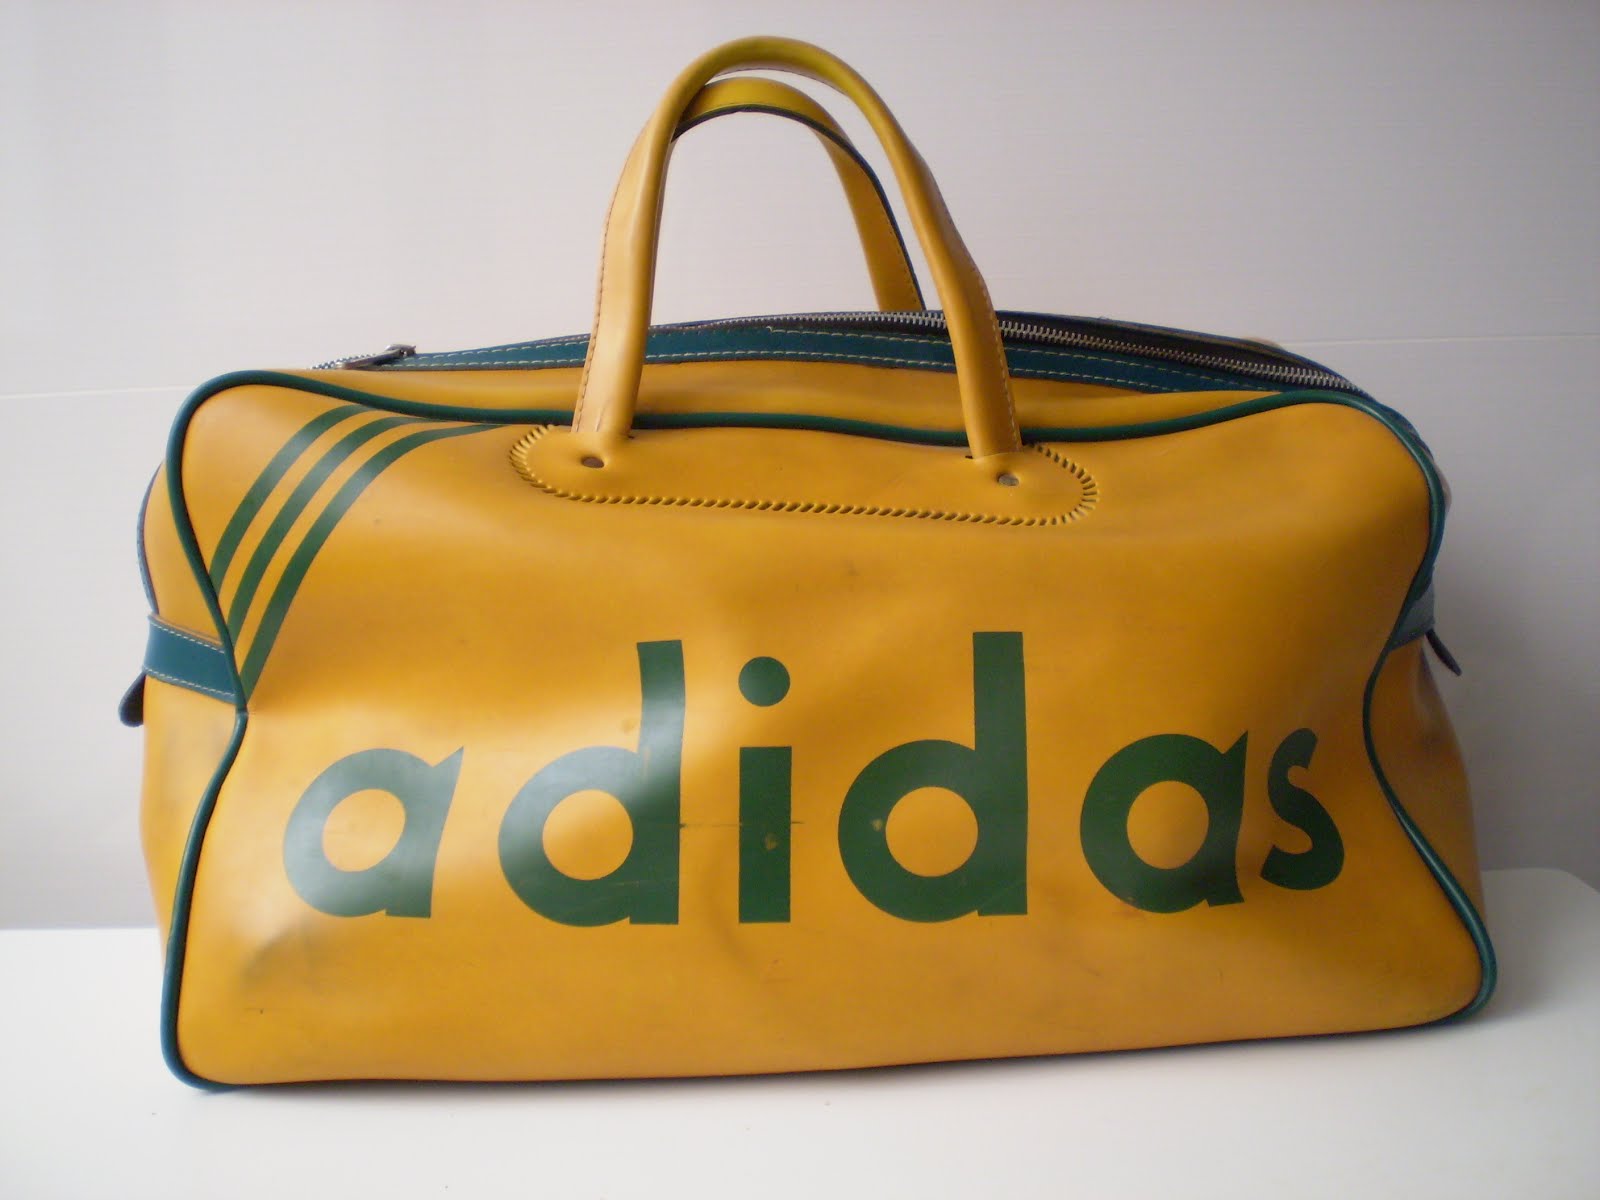 Bienes Piscina Maldito Vintagería: Bolso Adidas de deporte, años 70, vintage sport bag